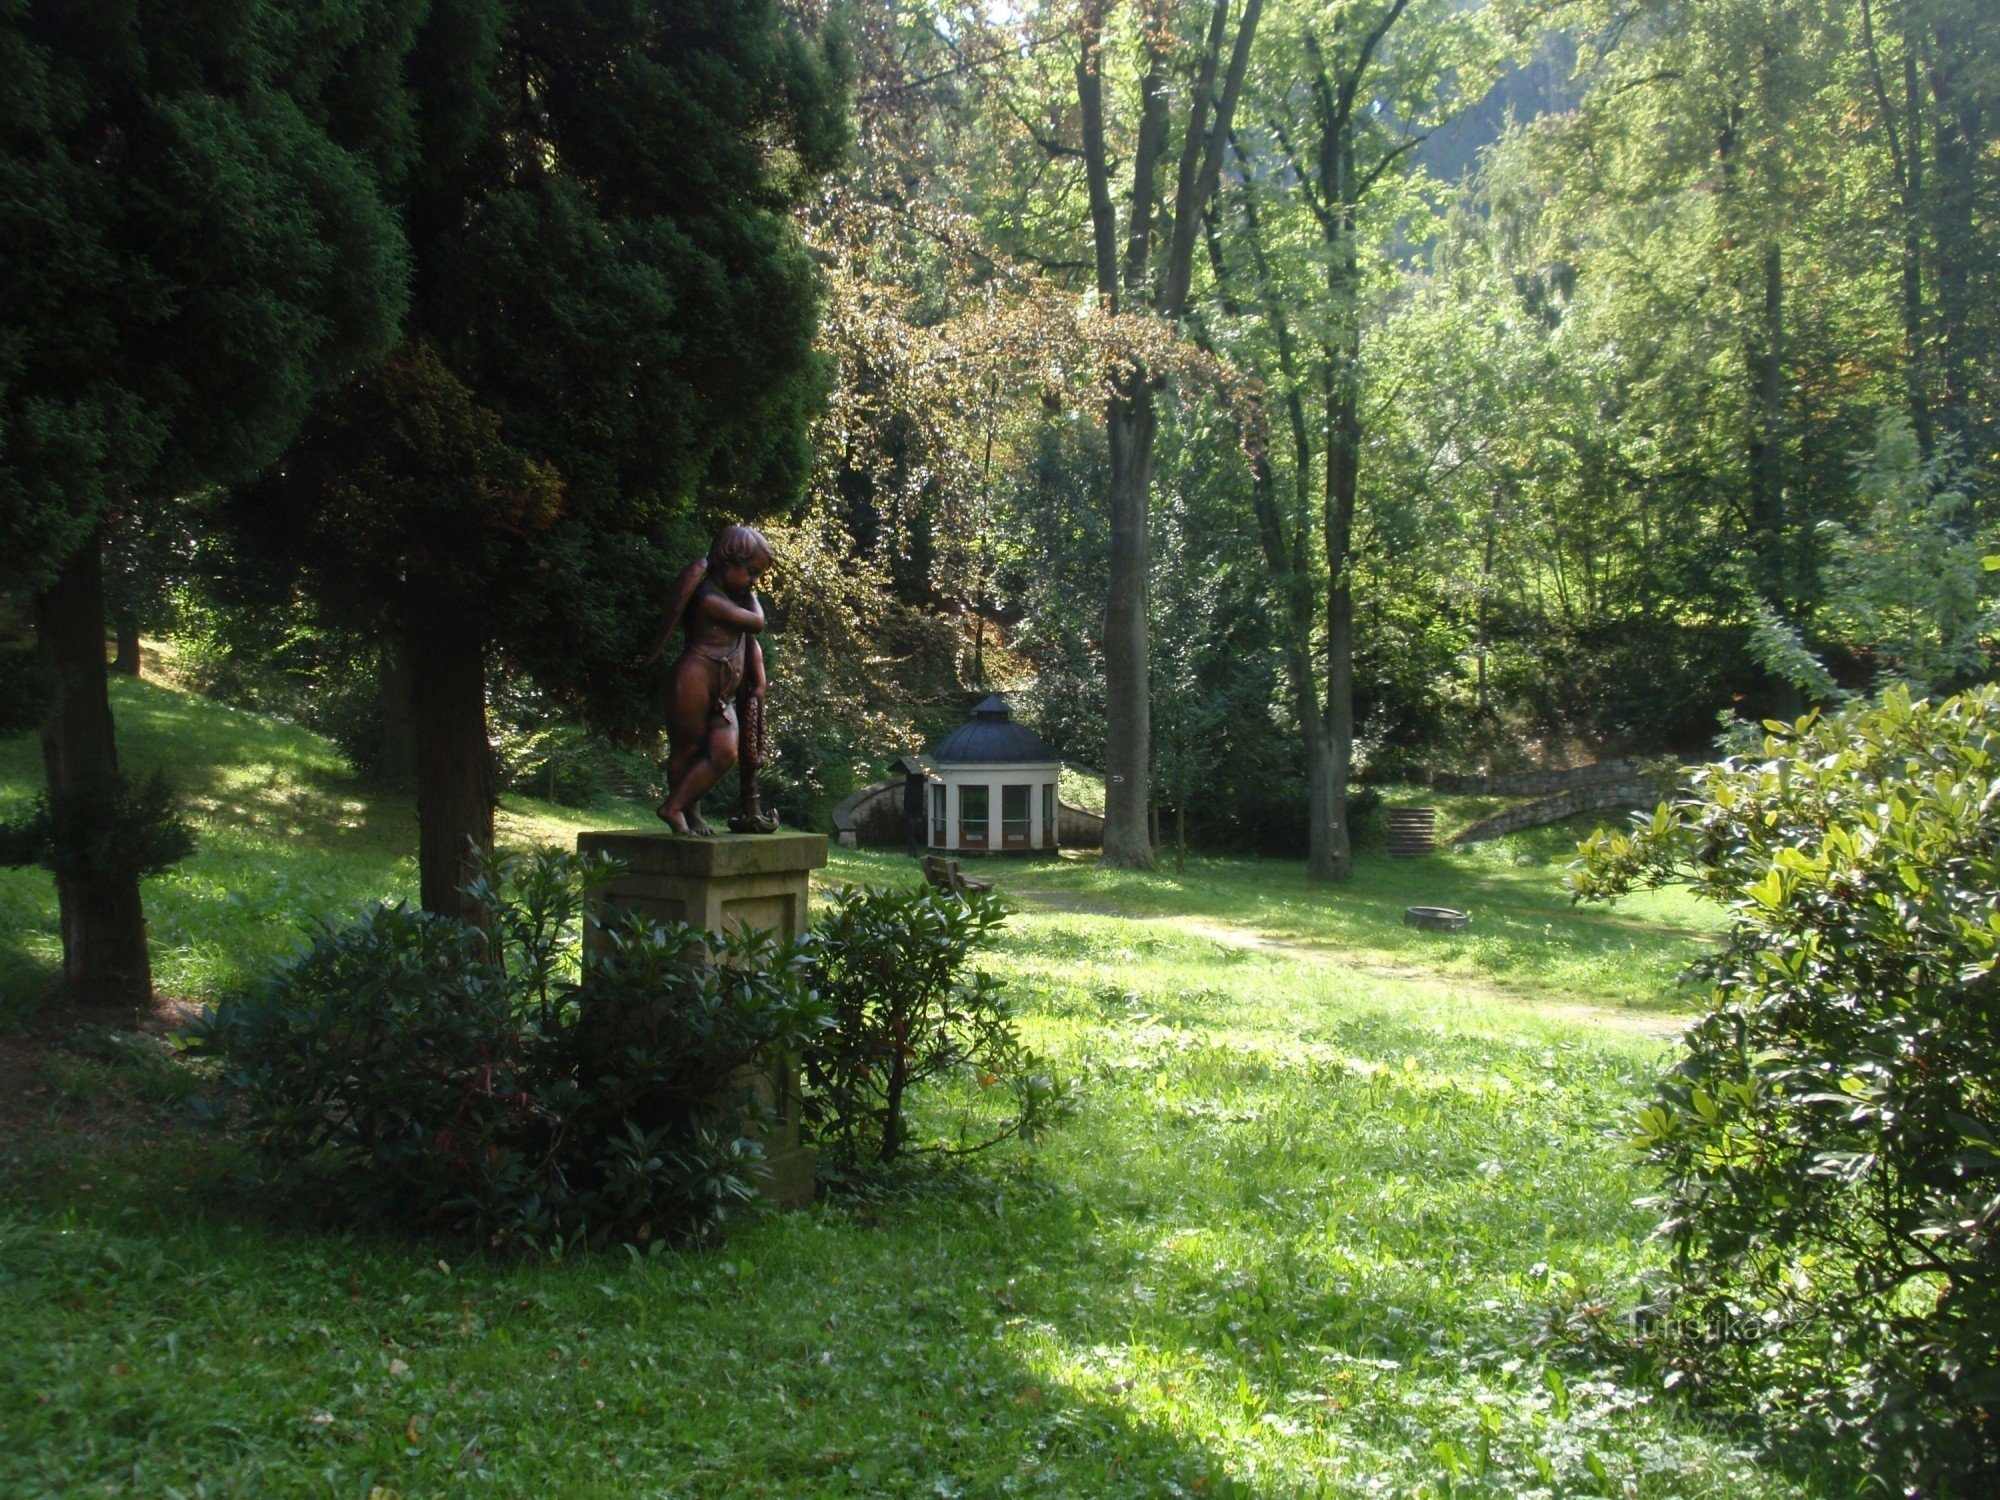 Công viên Javorka ở Česká Třebová